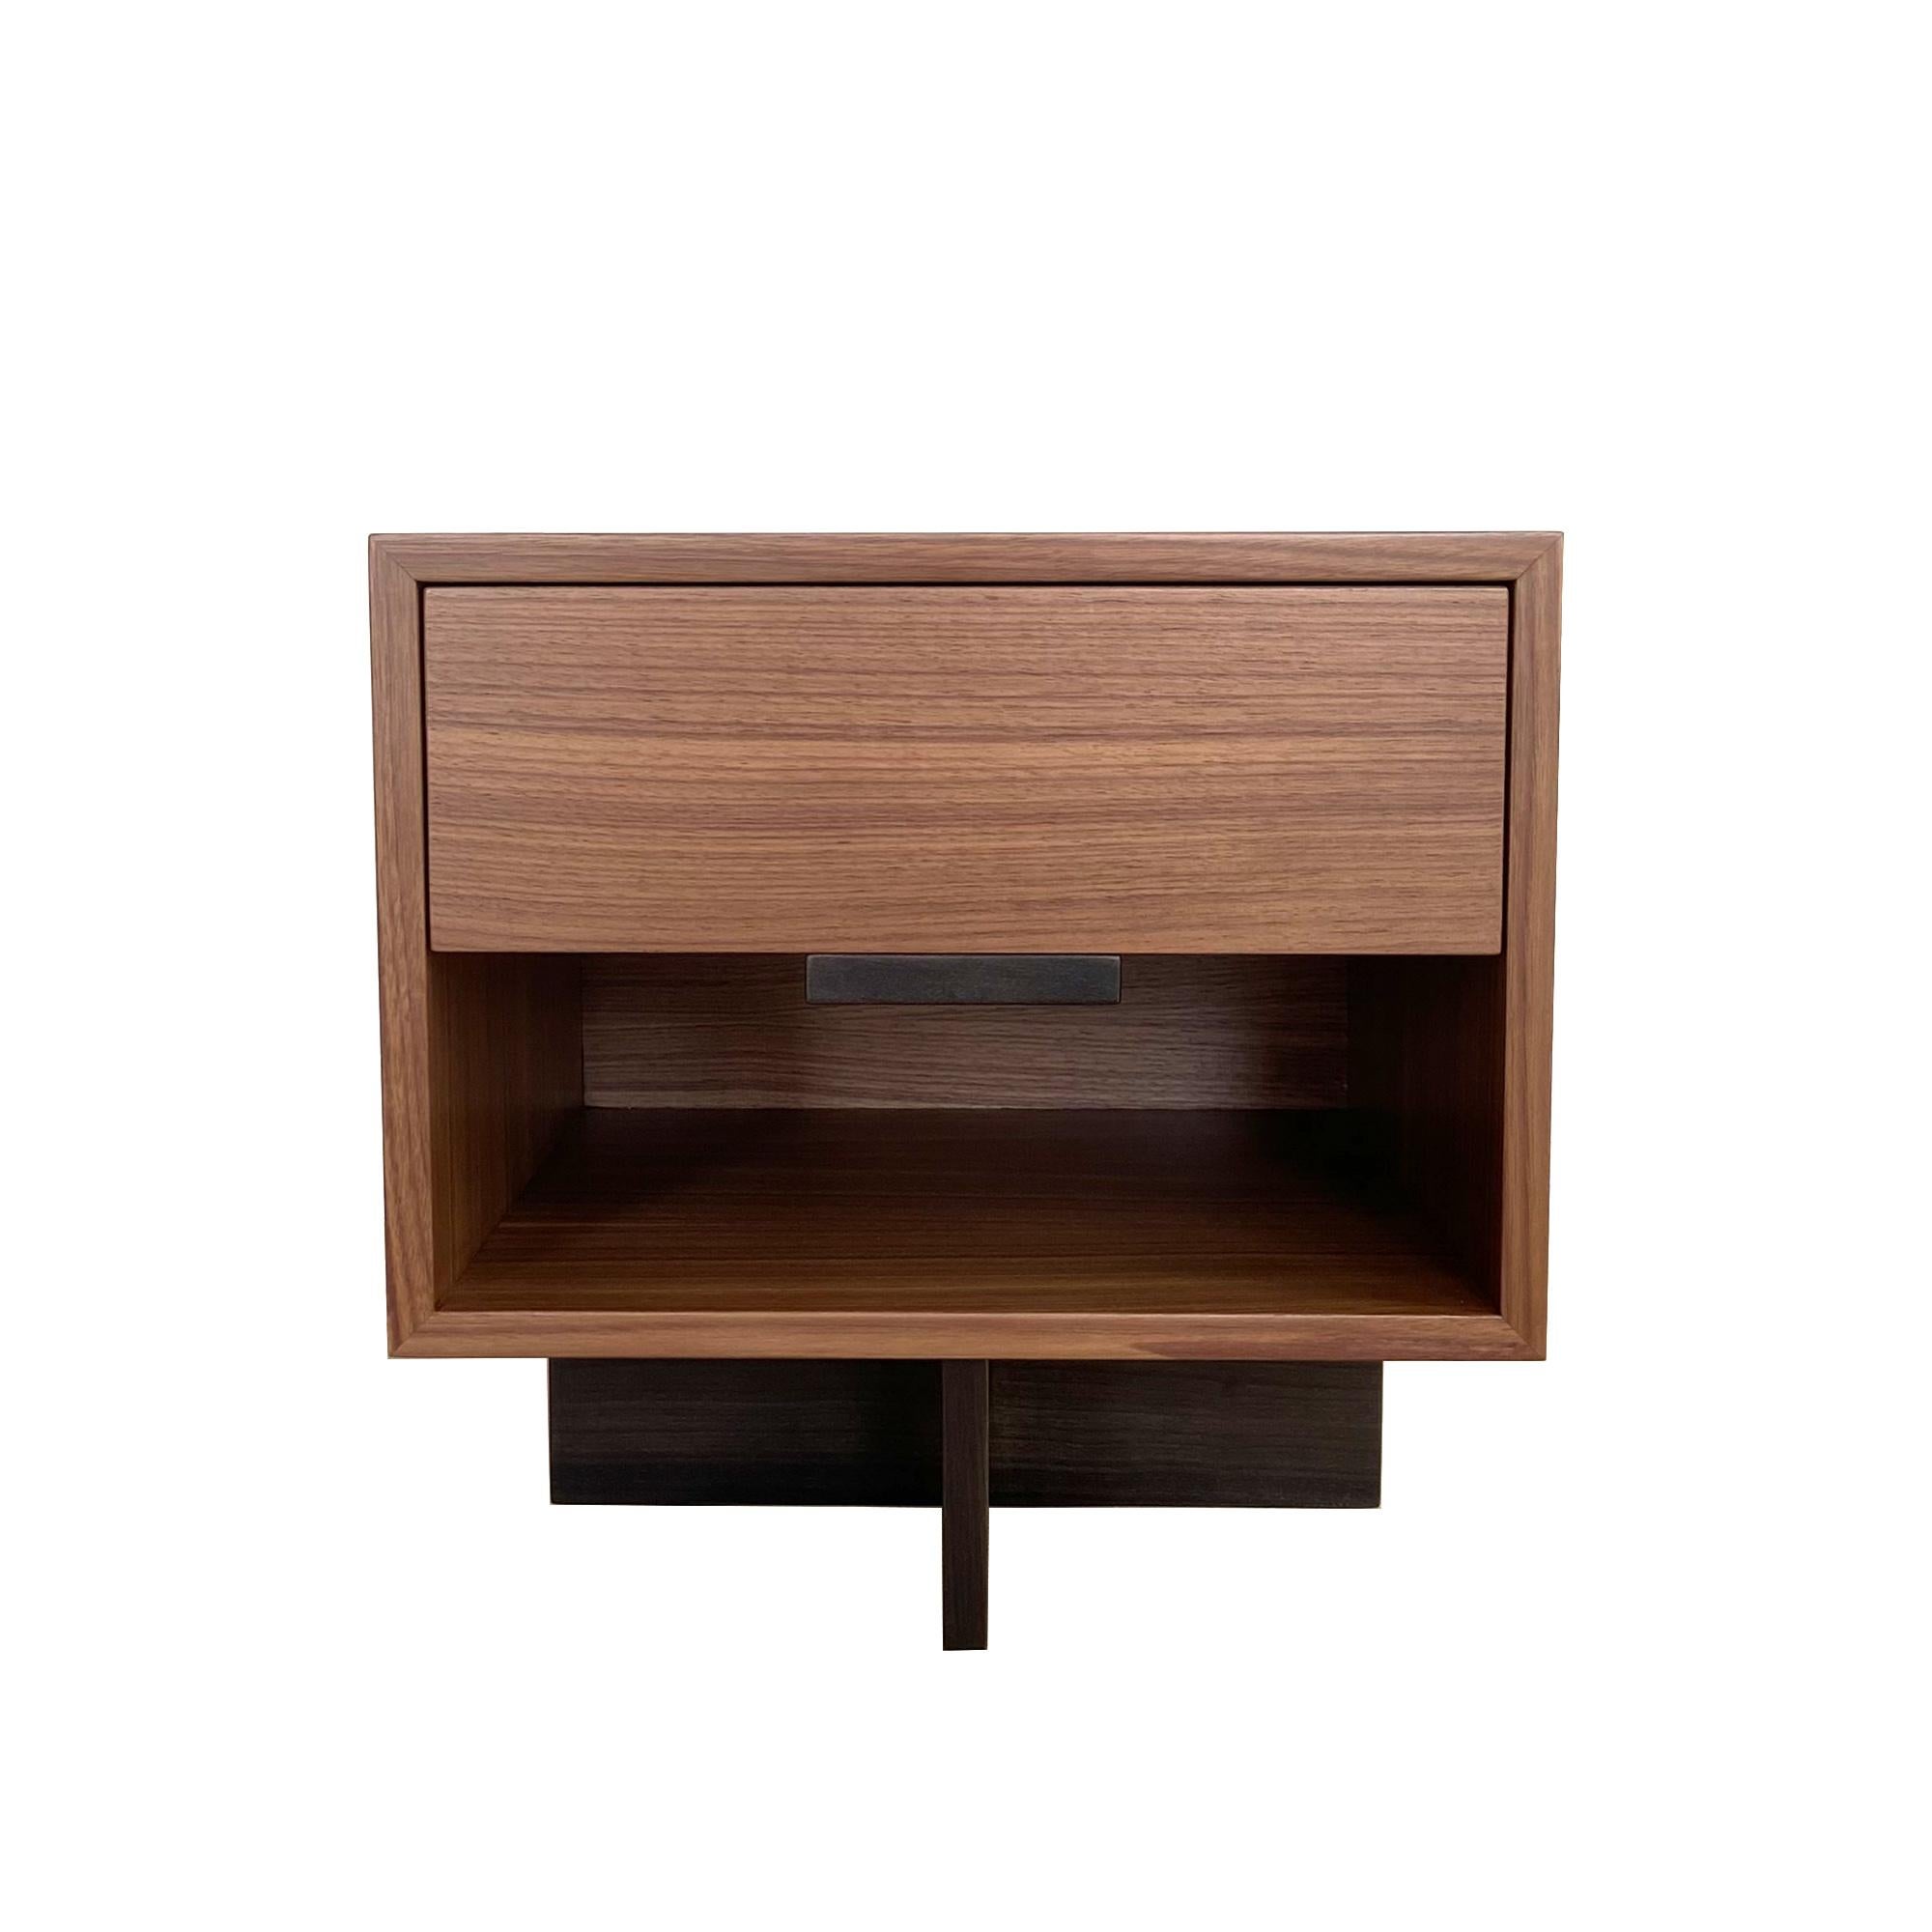 La table de nuit Kaid est un meuble fonctionnel et attrayant qui ajoutera une touche moderne et unique à votre espace de vie.

Le contraste entre l'élément de rangement massif et rectangulaire et le piédestal fin et linéaire donne une impression